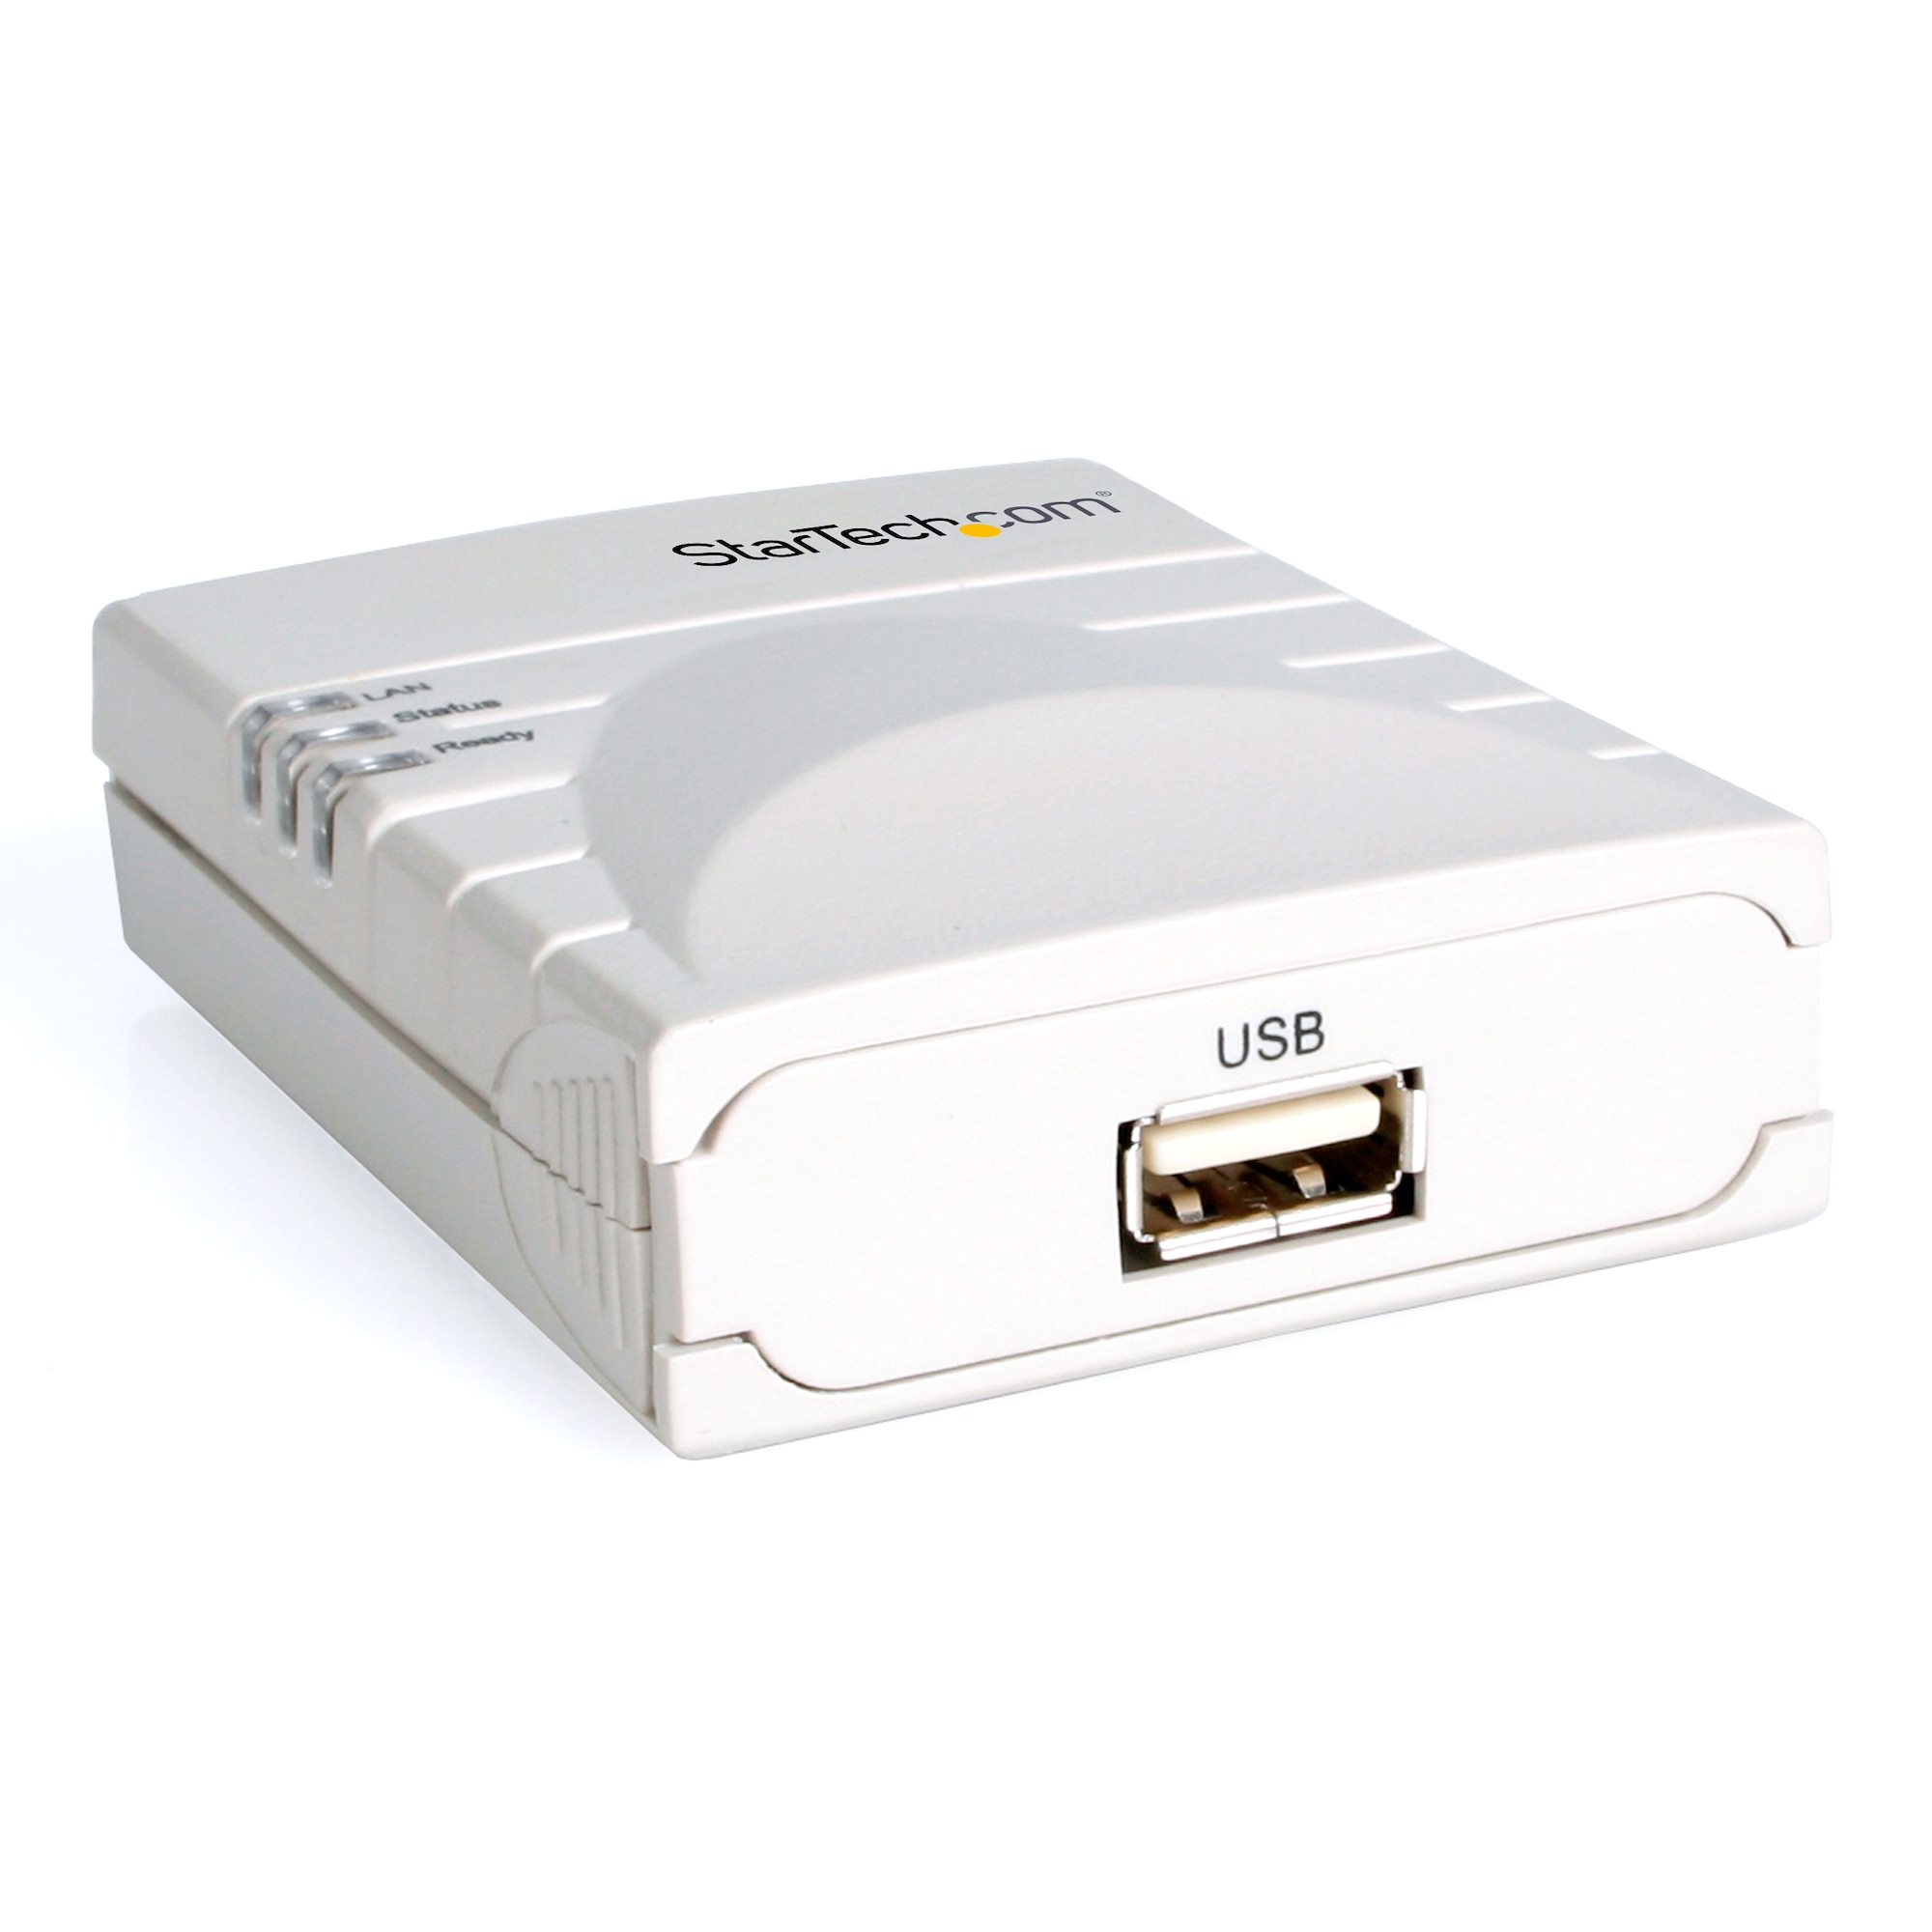 sprogfærdighed manifestation Grøn 10/100 Mbps USB Print Server - Network Printer Servers | StarTech.com